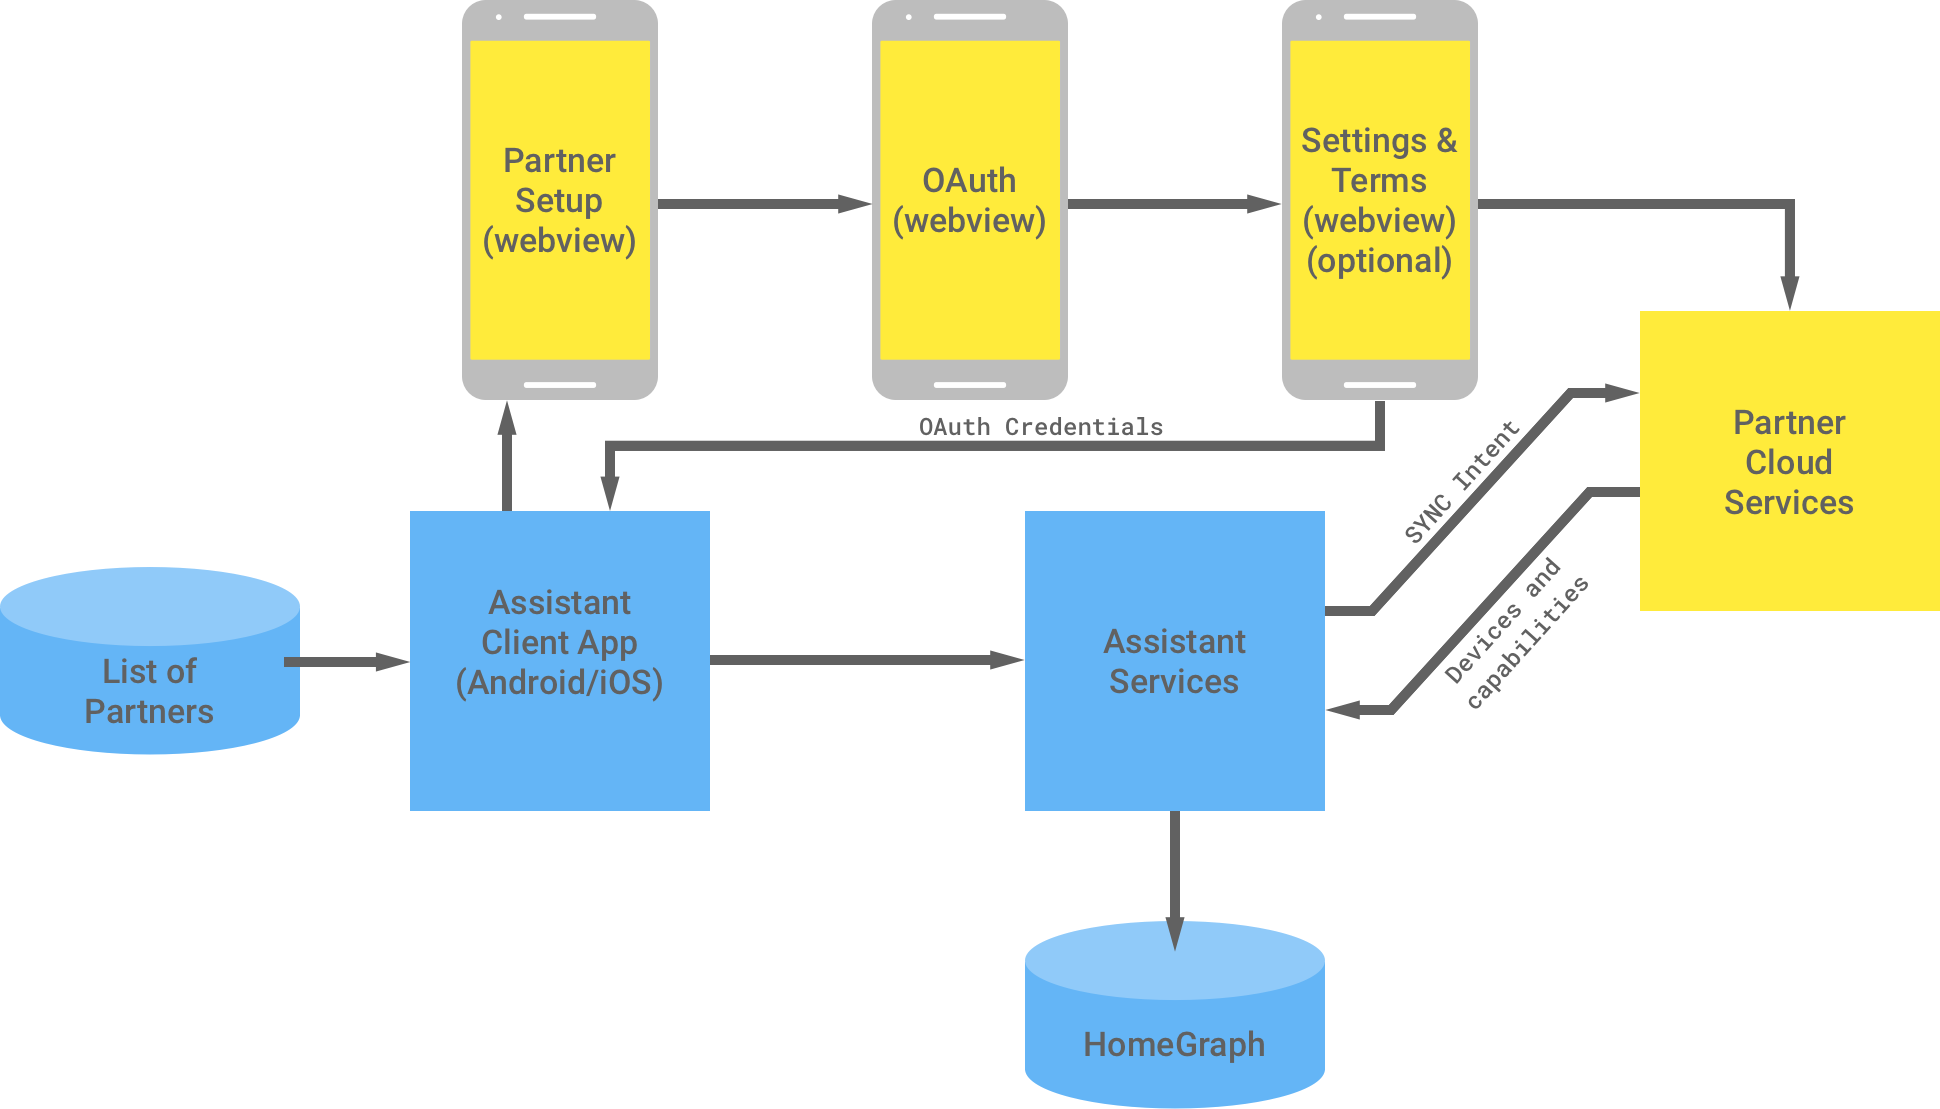 En esta figura, se muestra la interacción entre la infraestructura de Google y la de socios. Desde la infraestructura de Google, hay una lista de socios disponibles para la app cliente de Asistente, que luego fluye a la infraestructura de socios a fin de completar la autenticación de OAuth. La autenticación de OAuth del lado del socio es la vista web de configuración de socios, la vista web de OAuth, las condiciones y los términos de configuración opcionales, y los servicios en la nube del socio. Luego, la infraestructura del socio envía las credenciales de OAuth a la app cliente del Asistente. Los servicios en la nube del socio envían dispositivos y capacidades disponibles a los servicios del Asistente, que luego almacenan la información en el gráfico de inicio.